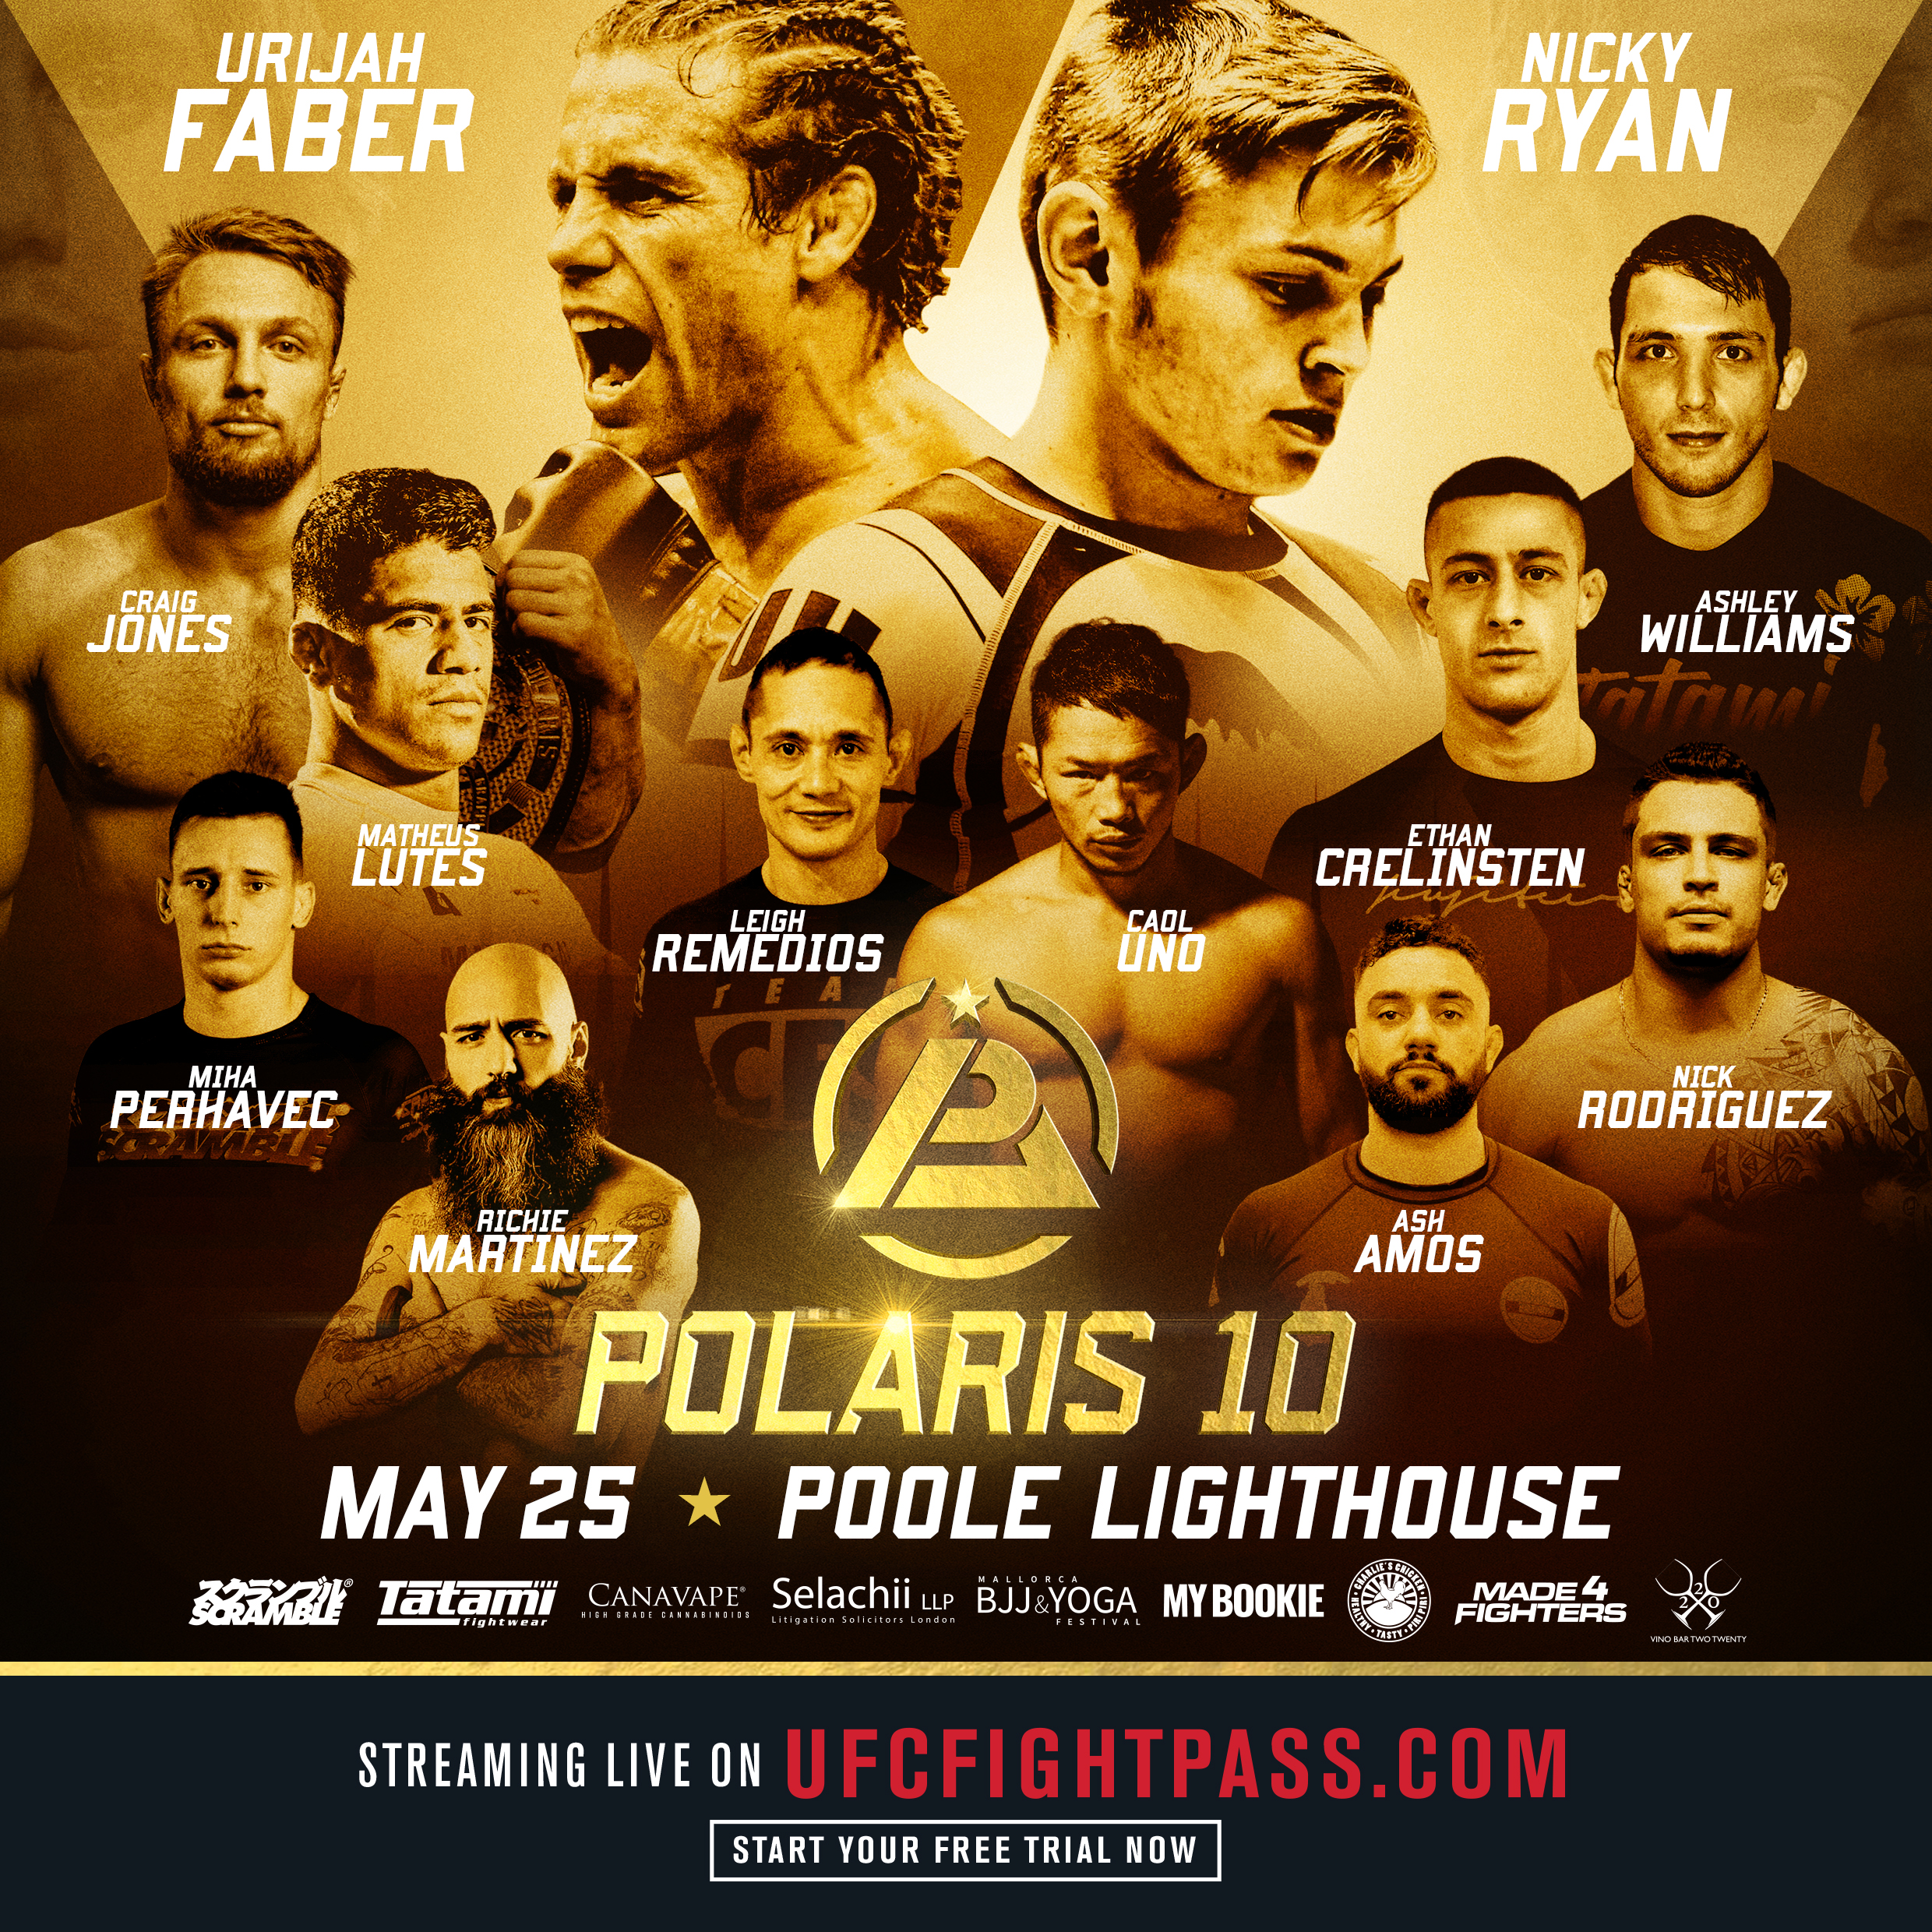 Polaris 10 poster